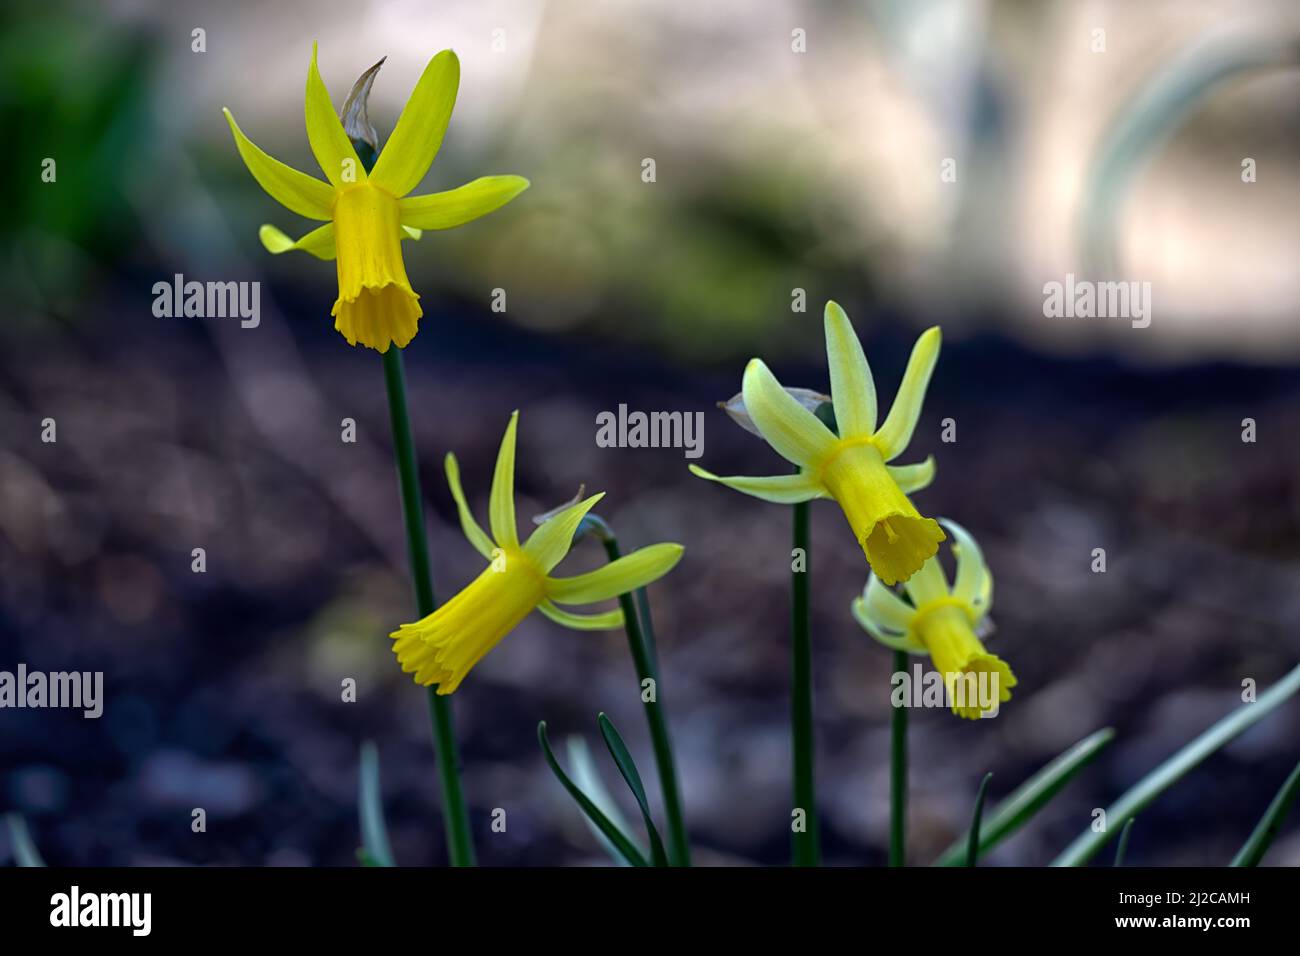 Narcissus Cyclamineus Englander,daffodil fiorito di ciclamini,daffodil specie,fiori gialli,fioritura,primavera,petali riflessi,riflesso,petali,primavera in Th Foto Stock